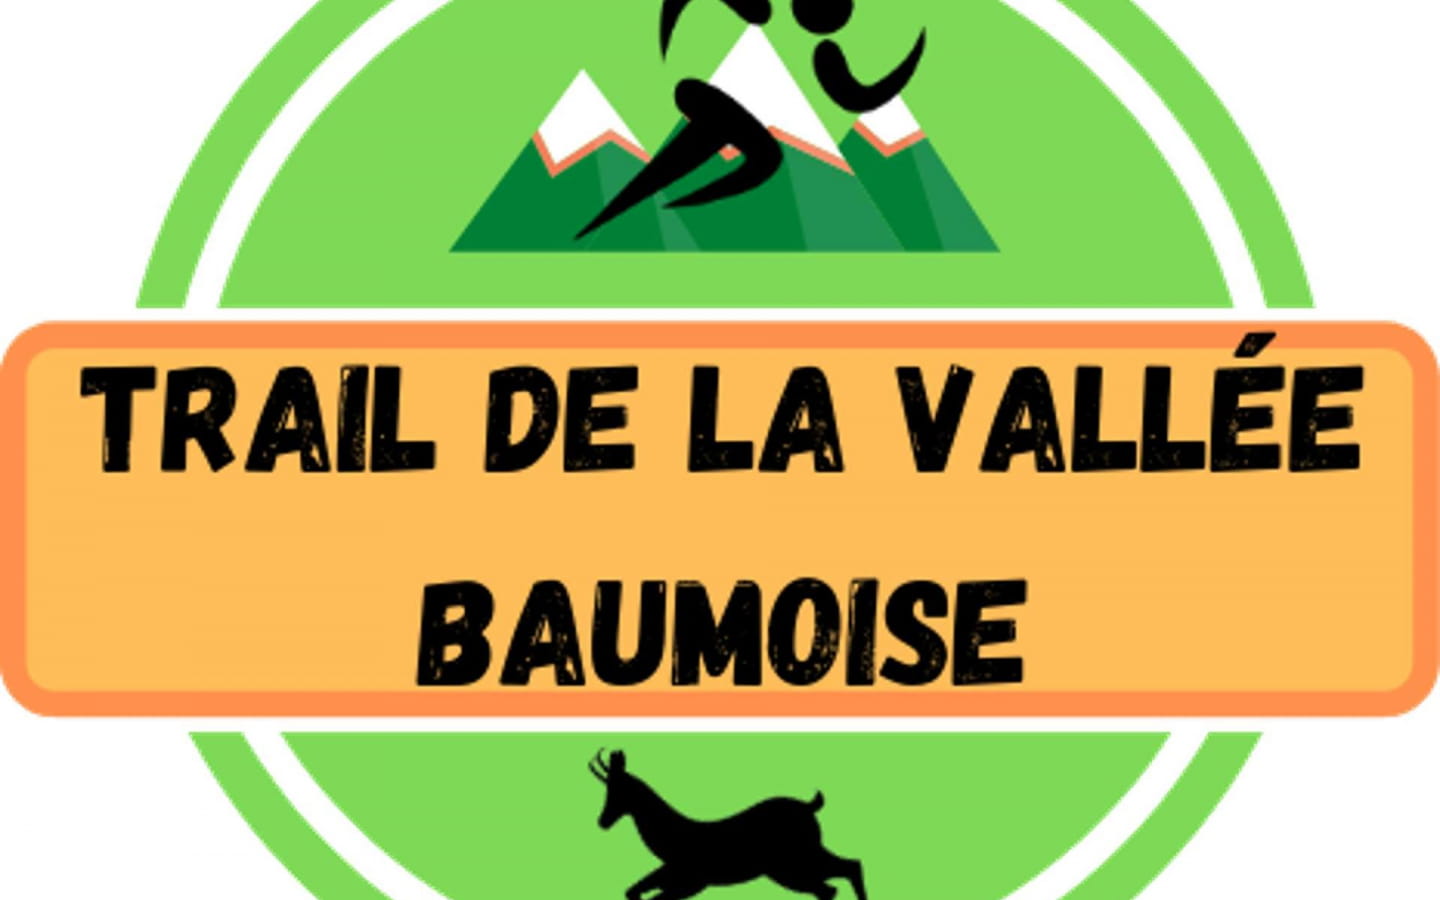 Trail de la Vallée Baumoise (Trail des Baumoise-Tals)